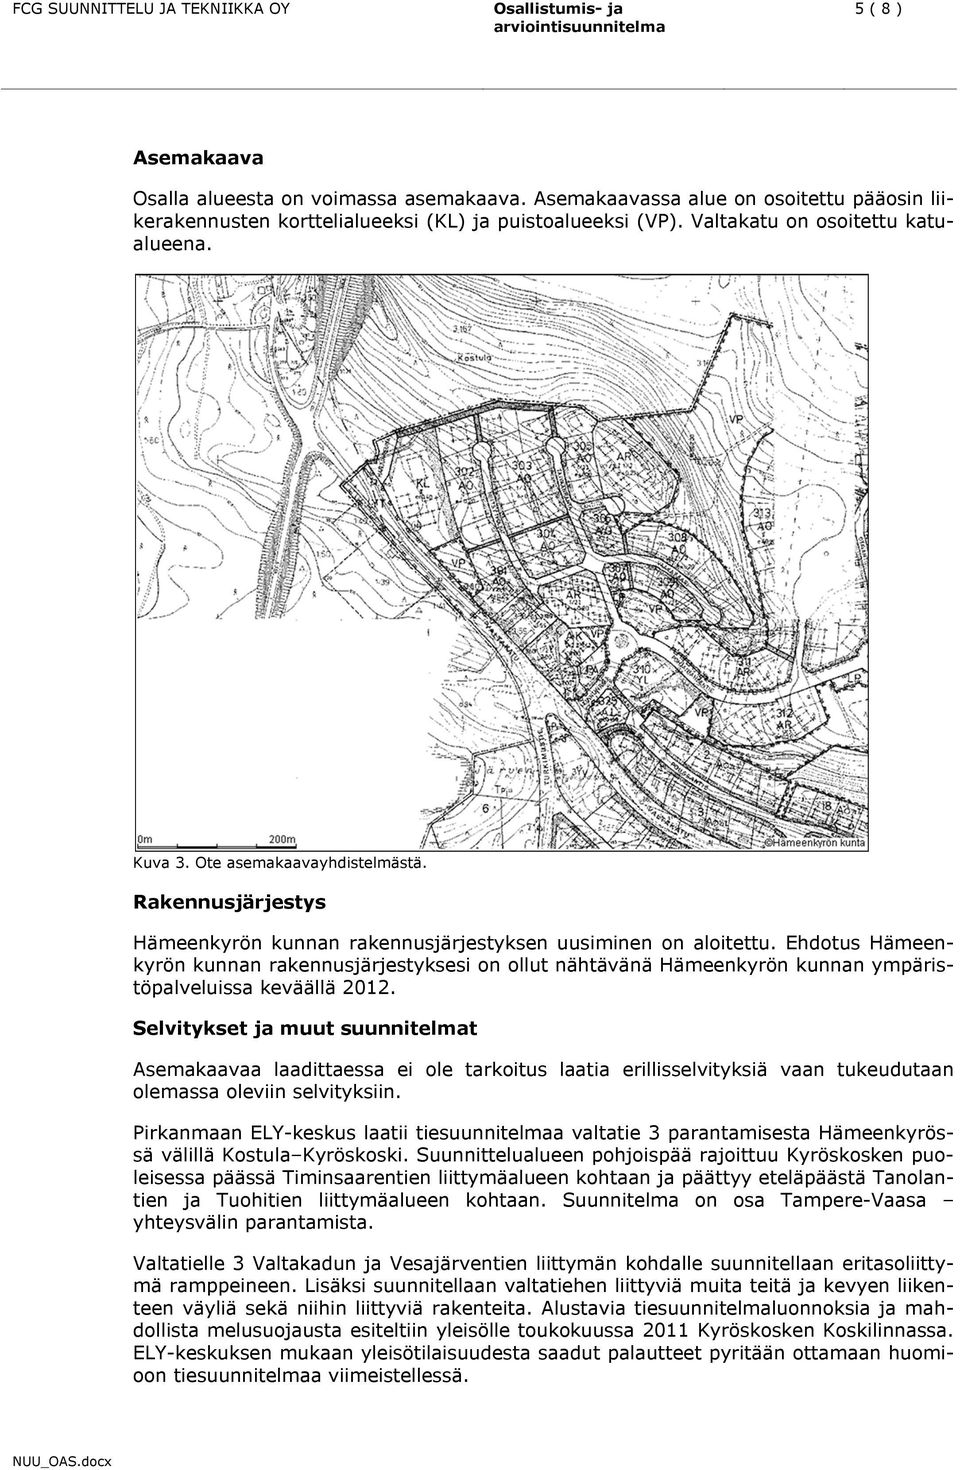 Ehdotus Hämeenkyrön kunnan rakennusjärjestyksesi on ollut nähtävänä Hämeenkyrön kunnan ympäristöpalveluissa keväällä 2012.